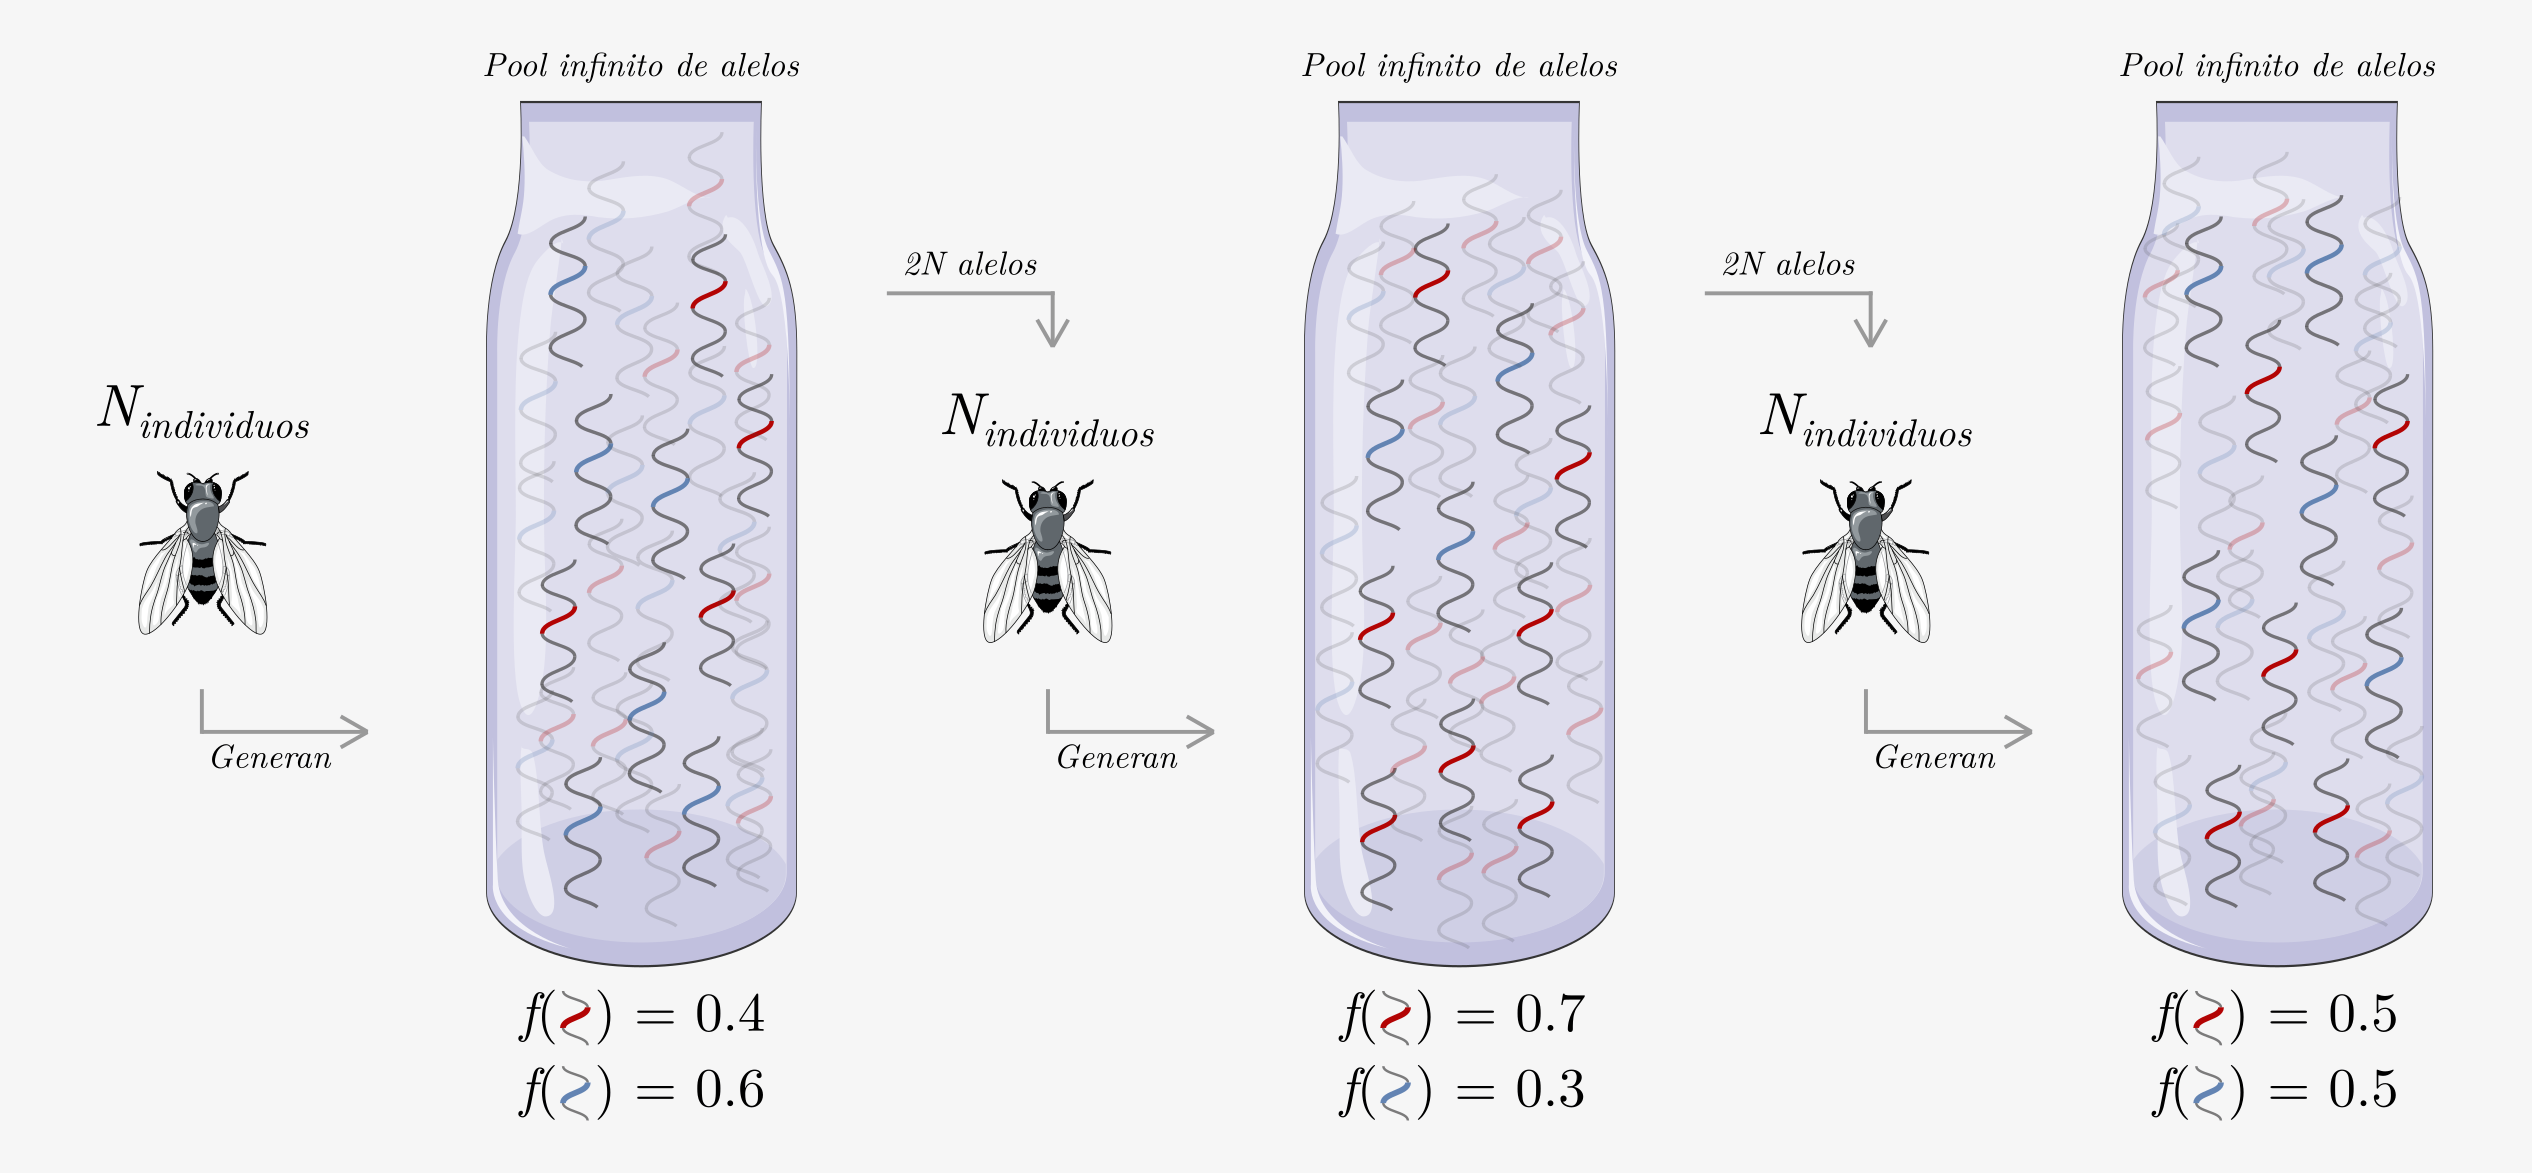 Representación esquemática del modelo de Wright-Fisher. Una población finita de N individuos (de la especie \textit{D. melanogaster}, en este ejemplo) generan en cada generación un pool infinito de alelos que mantiene las frecuencias alélicas de la generación. La próxima generación se compone muestreando 2N alelos con reposición, los cuales conformarán a los N individuos de la generación. Imagen creada con elementos gráficos tomados de bioicons (https://bioicons.com/).